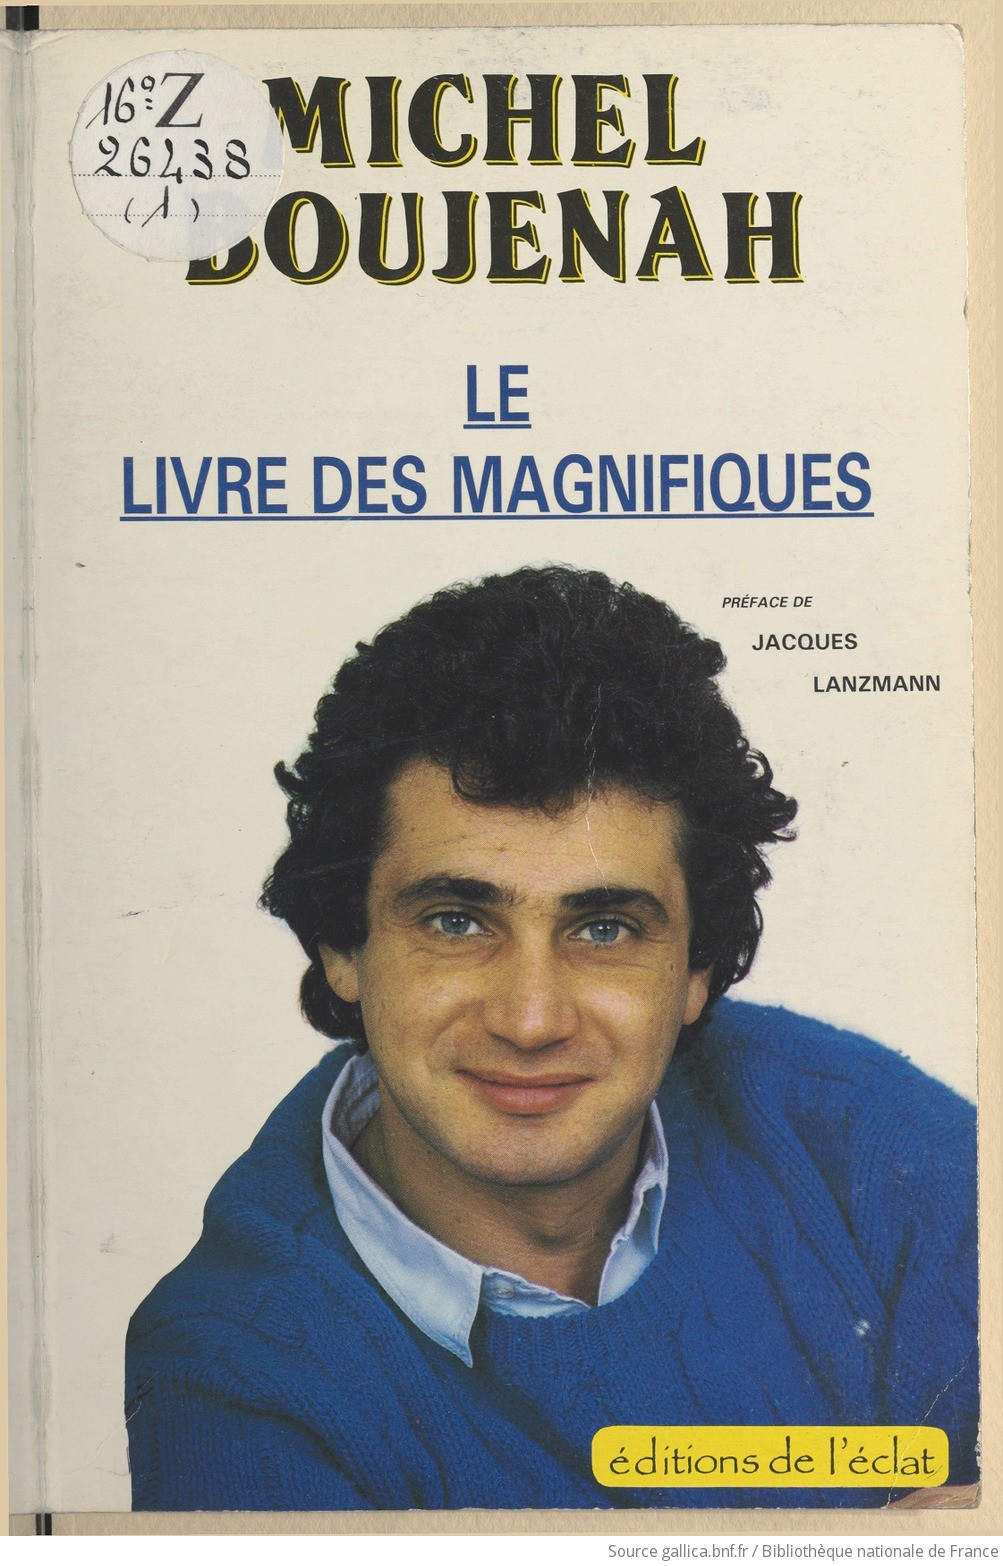 Le petit génie / Michel Boujenah